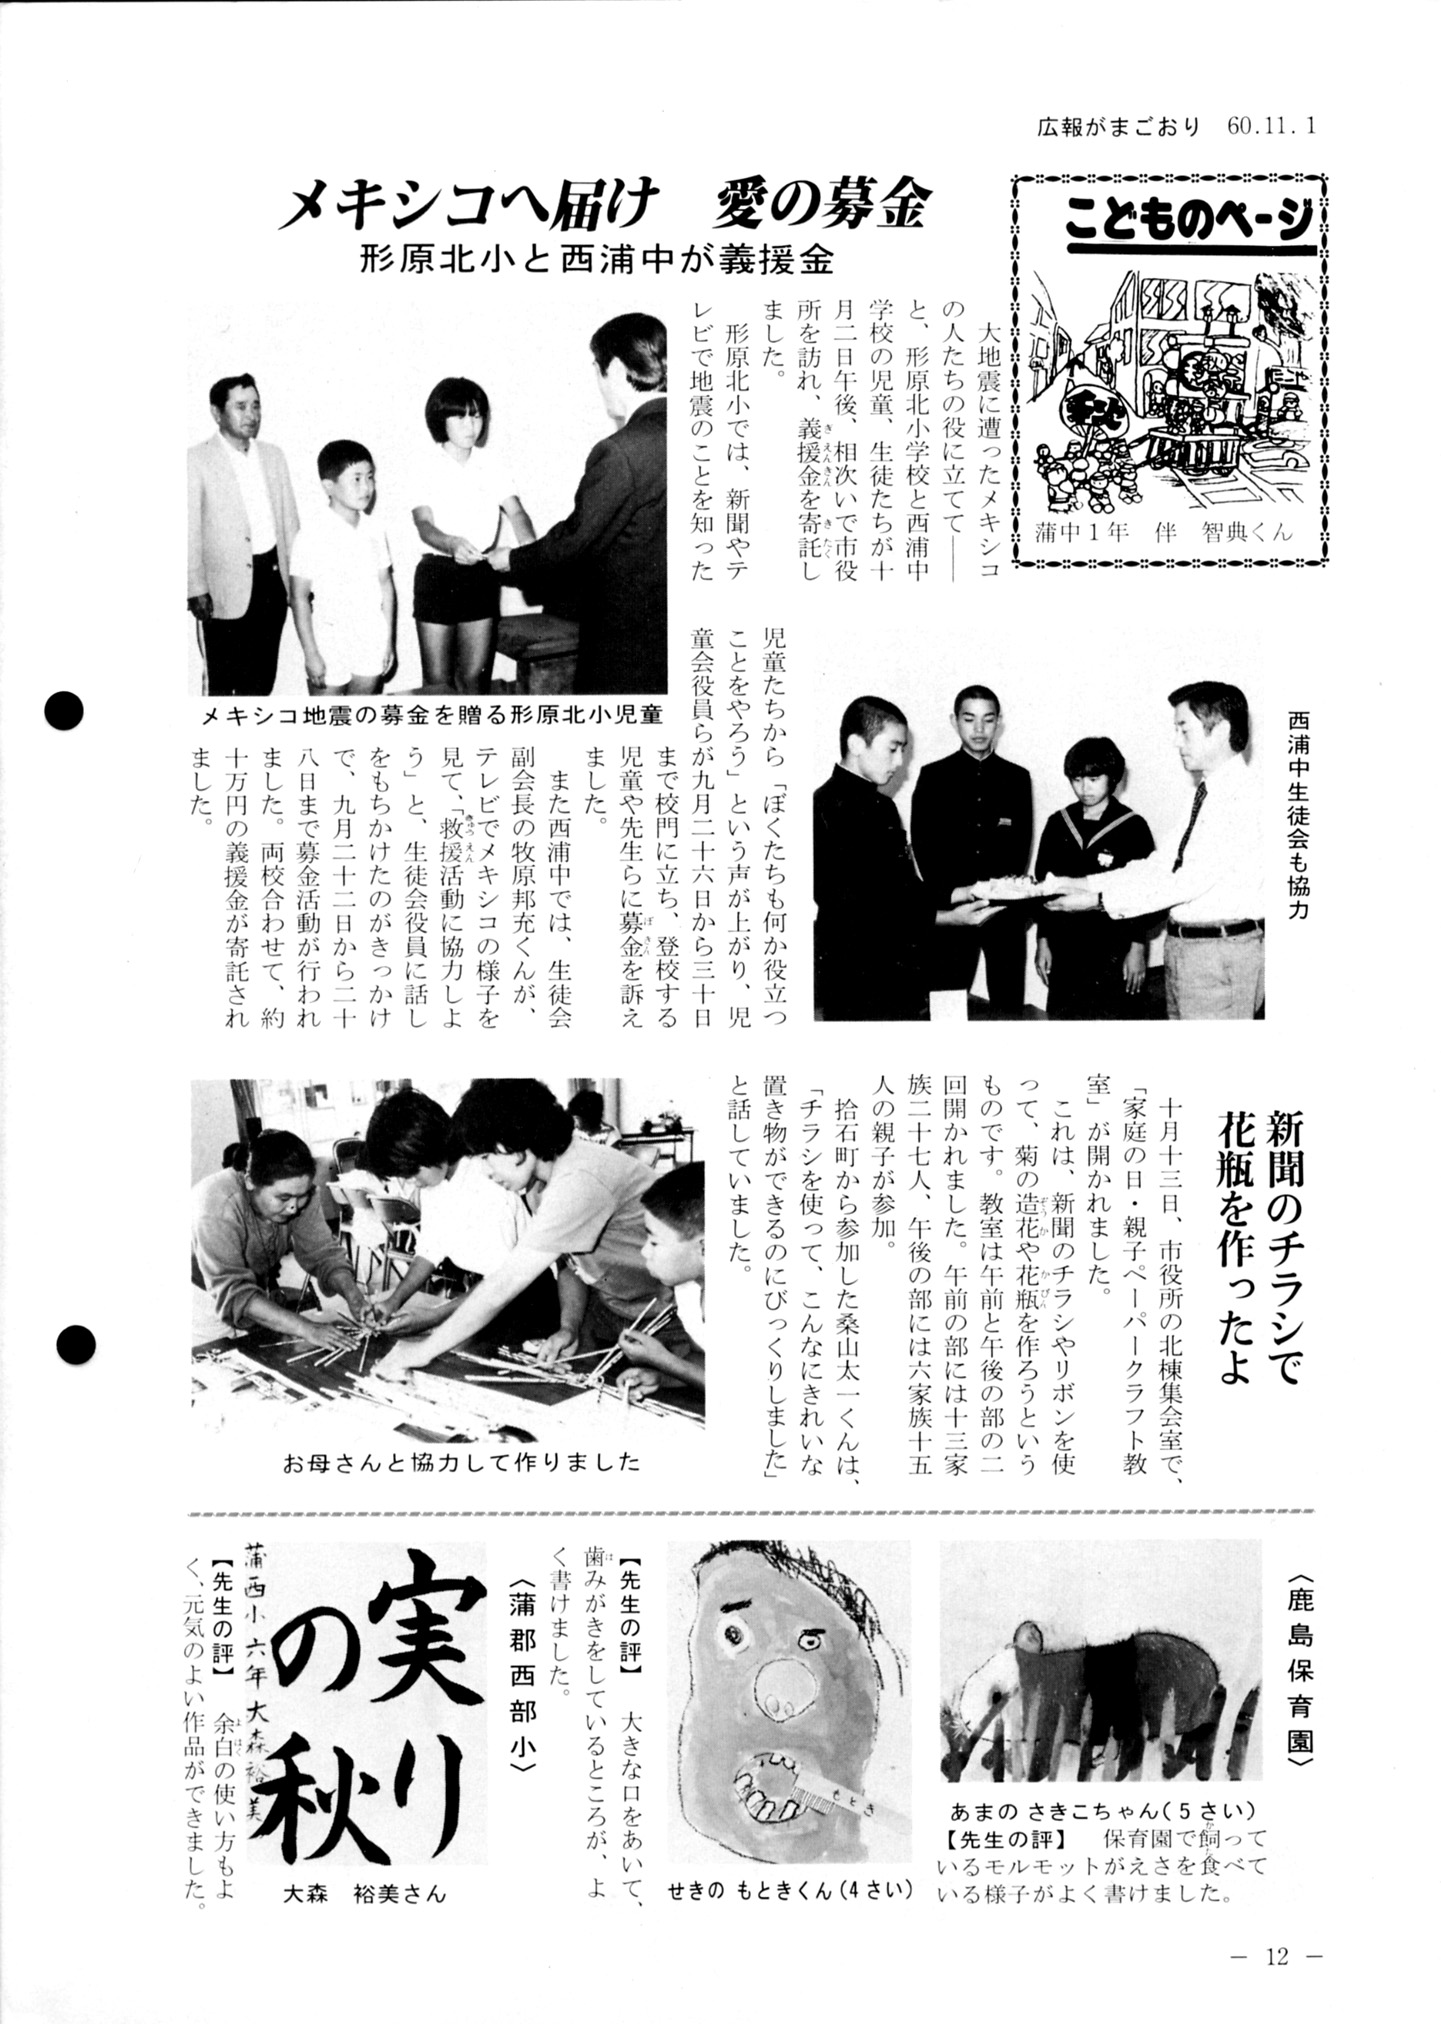 広報がまごおり 昭和60年11月 愛知県蒲郡市公式ホームページ